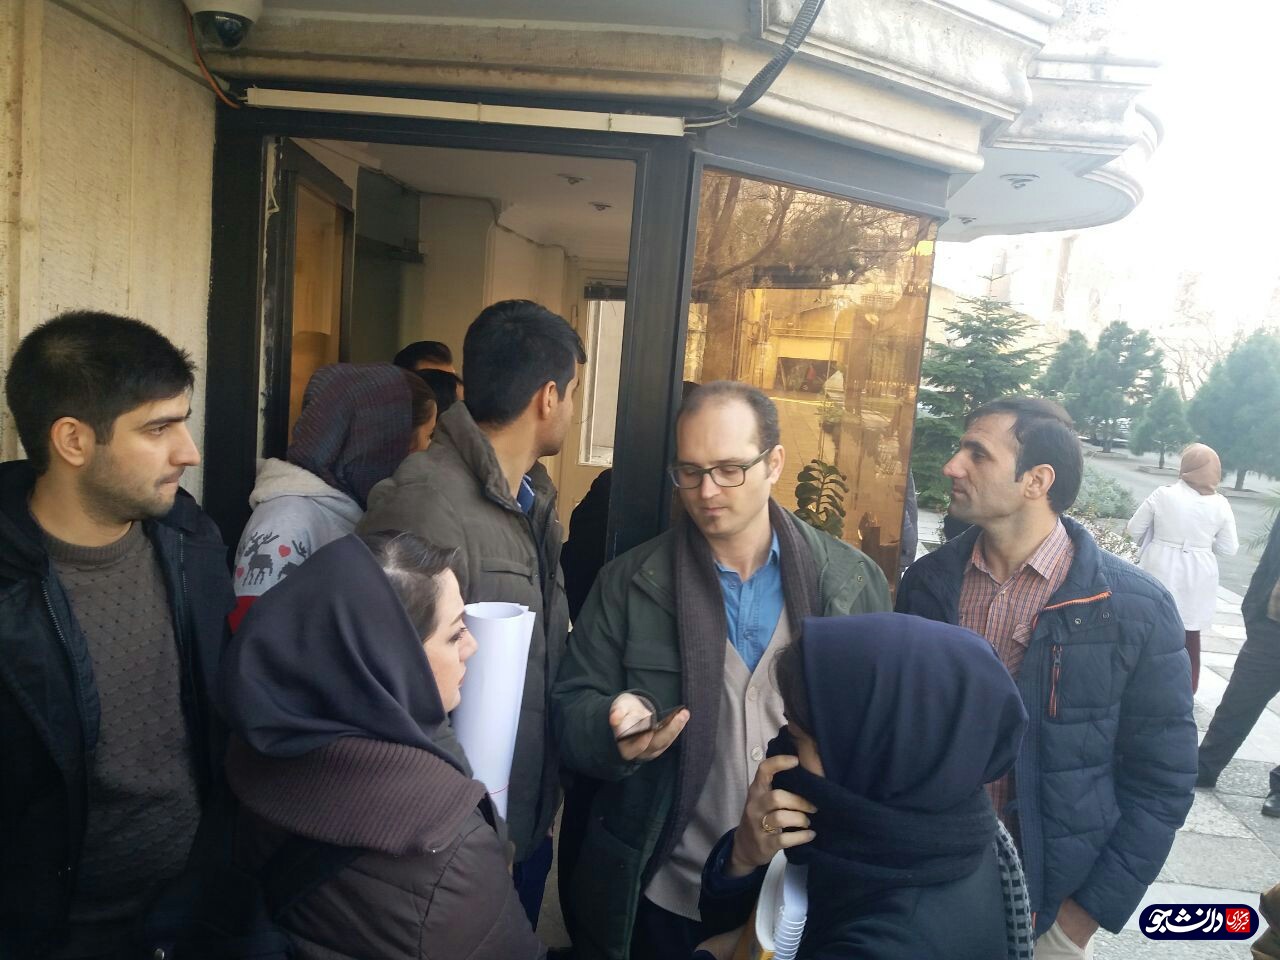 دانشجویان خوابگاه متاهلی جلال مقابل دفتر ریاست دانشگاه تهران تجمع کردند/ مسئولان پاسخگو نیستند!